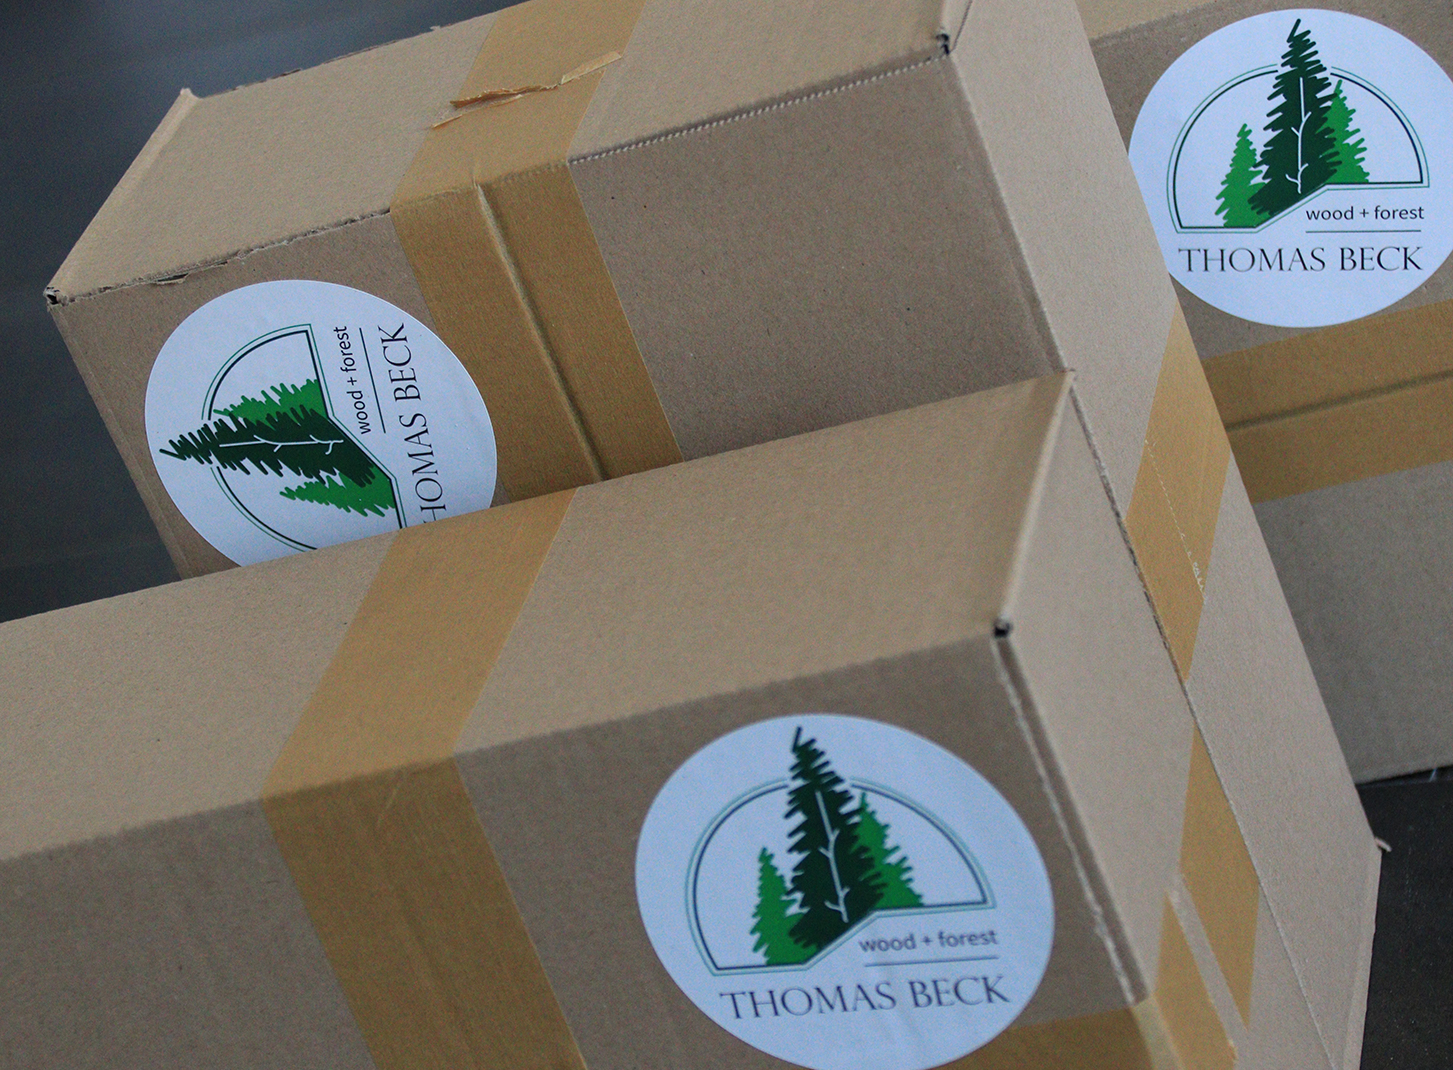 Kartons mit Aufkler Thomas Beck Forstwirtschaft